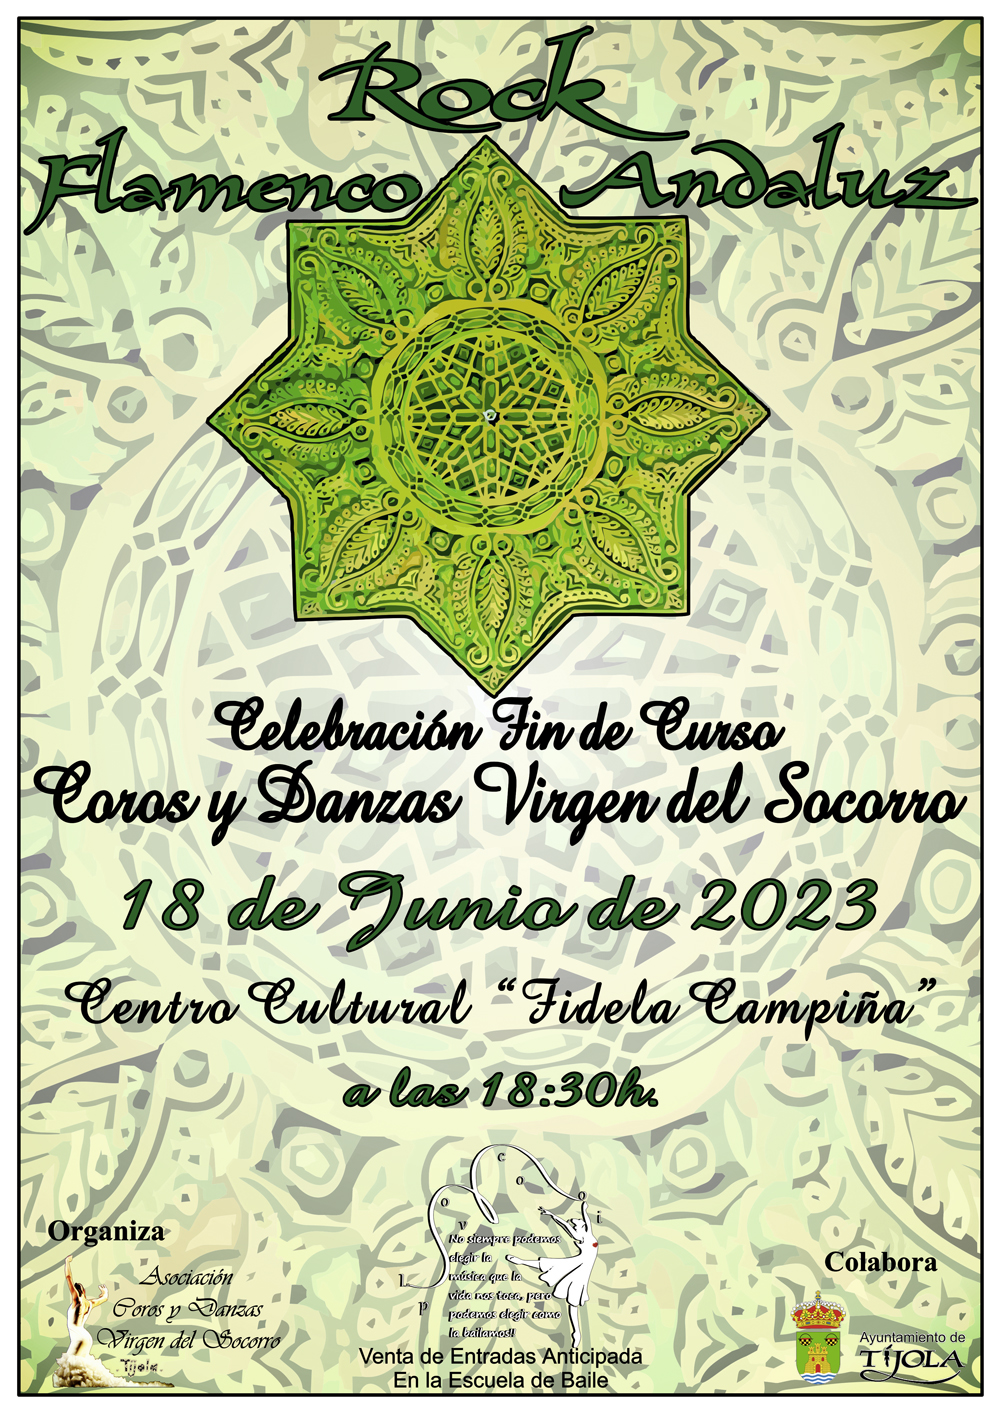 Imagen del Cartel de la Celebración del Fin de Curso 2023. Imagen de Estrella Tartésica al fondo e información del evento.